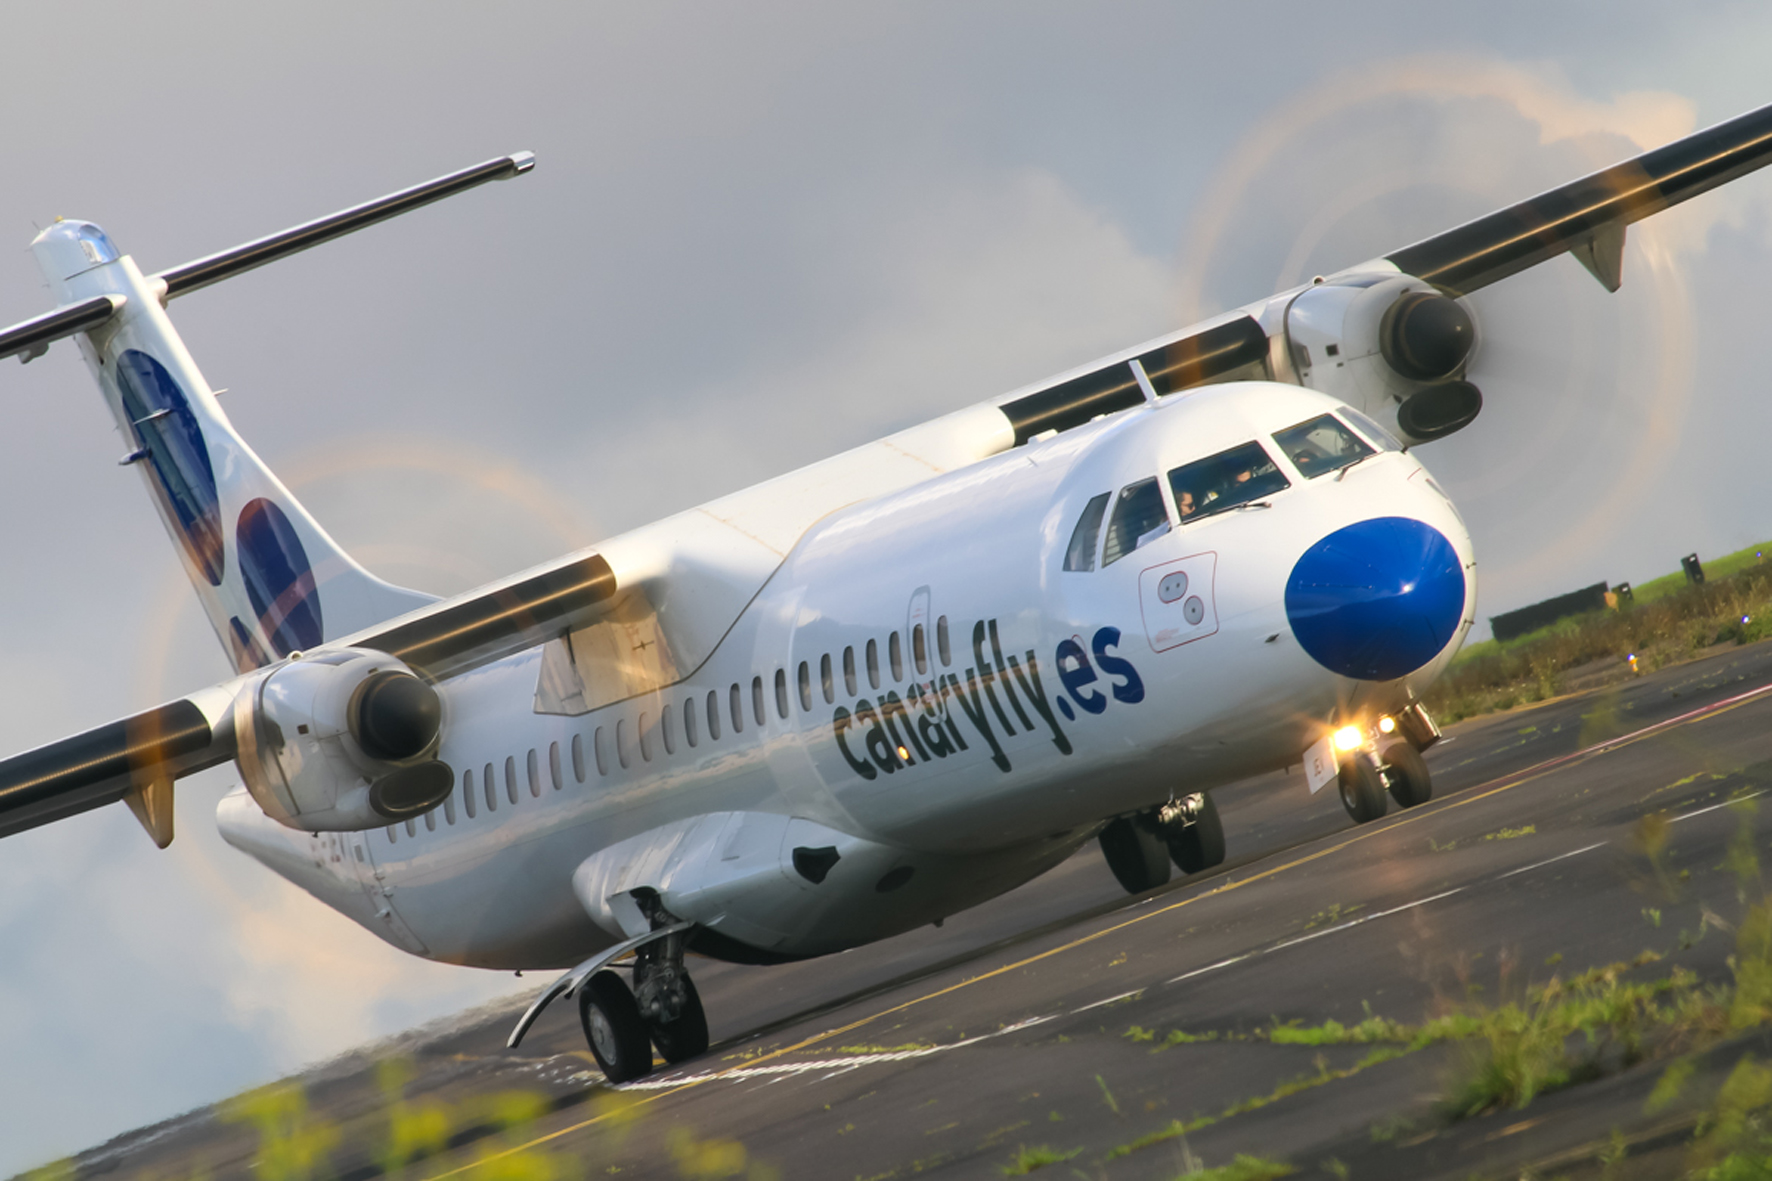 Canaryfly permitirá el cambio de fecha de sus vuelos sin coste adicional a causa del CoVID-19